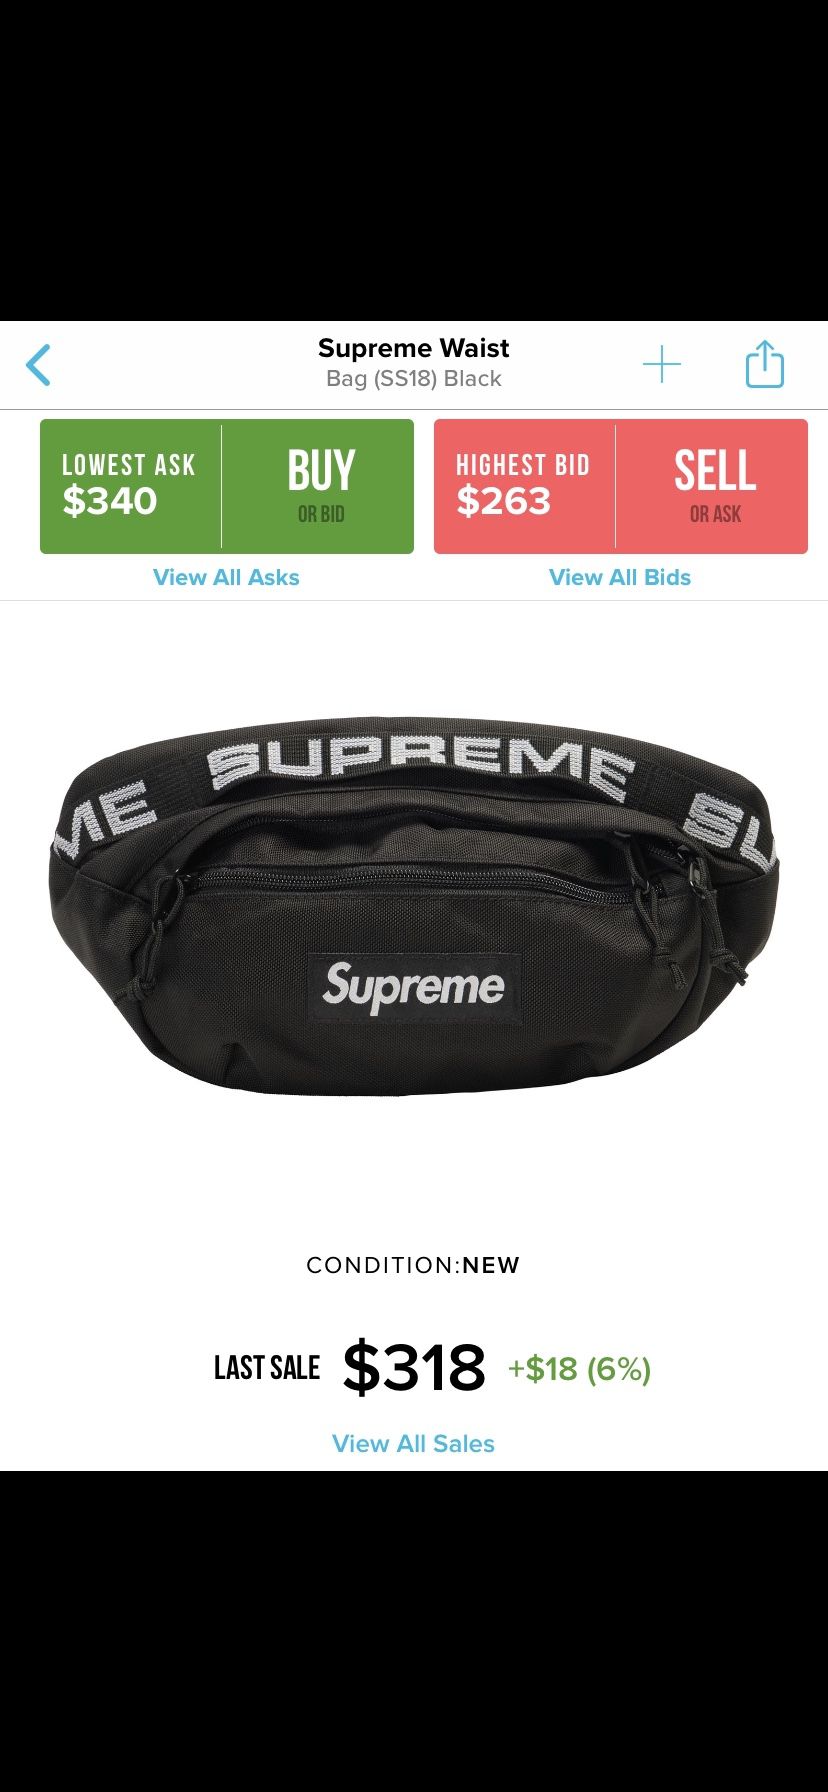 SS18 Supreme waist bag